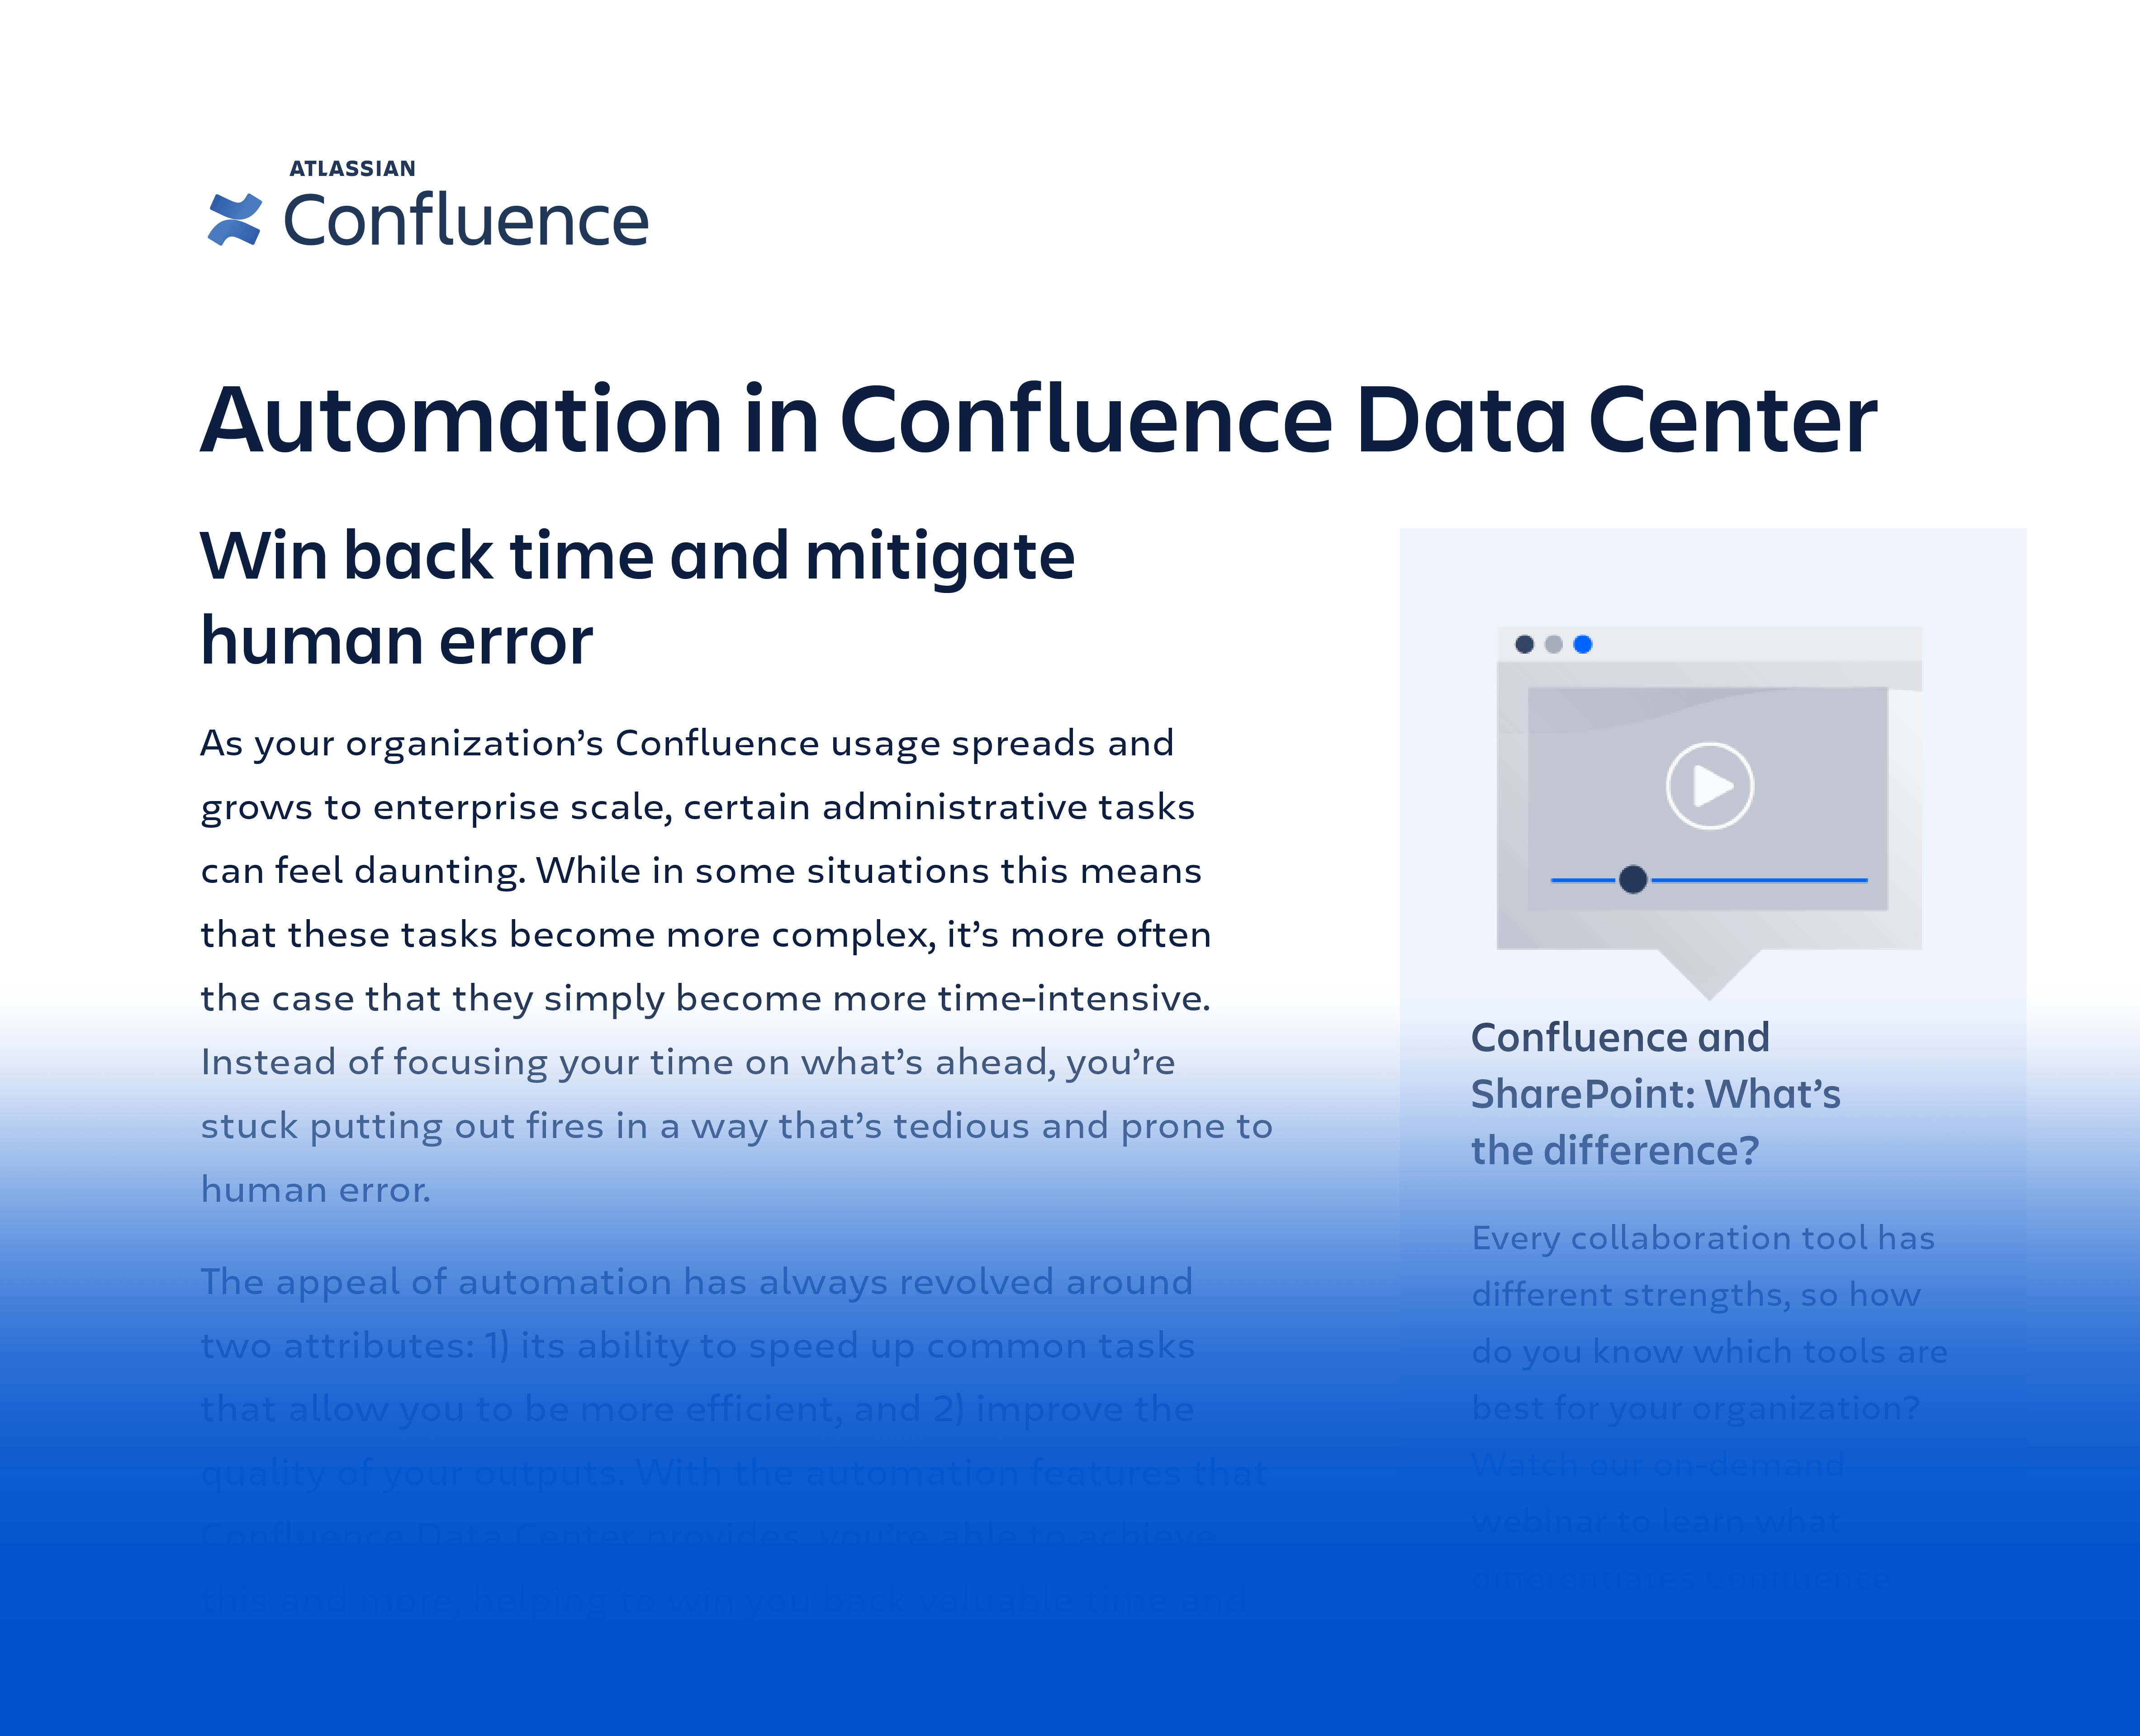 Scheda tecnica: l'automazione in Confluence Data Center